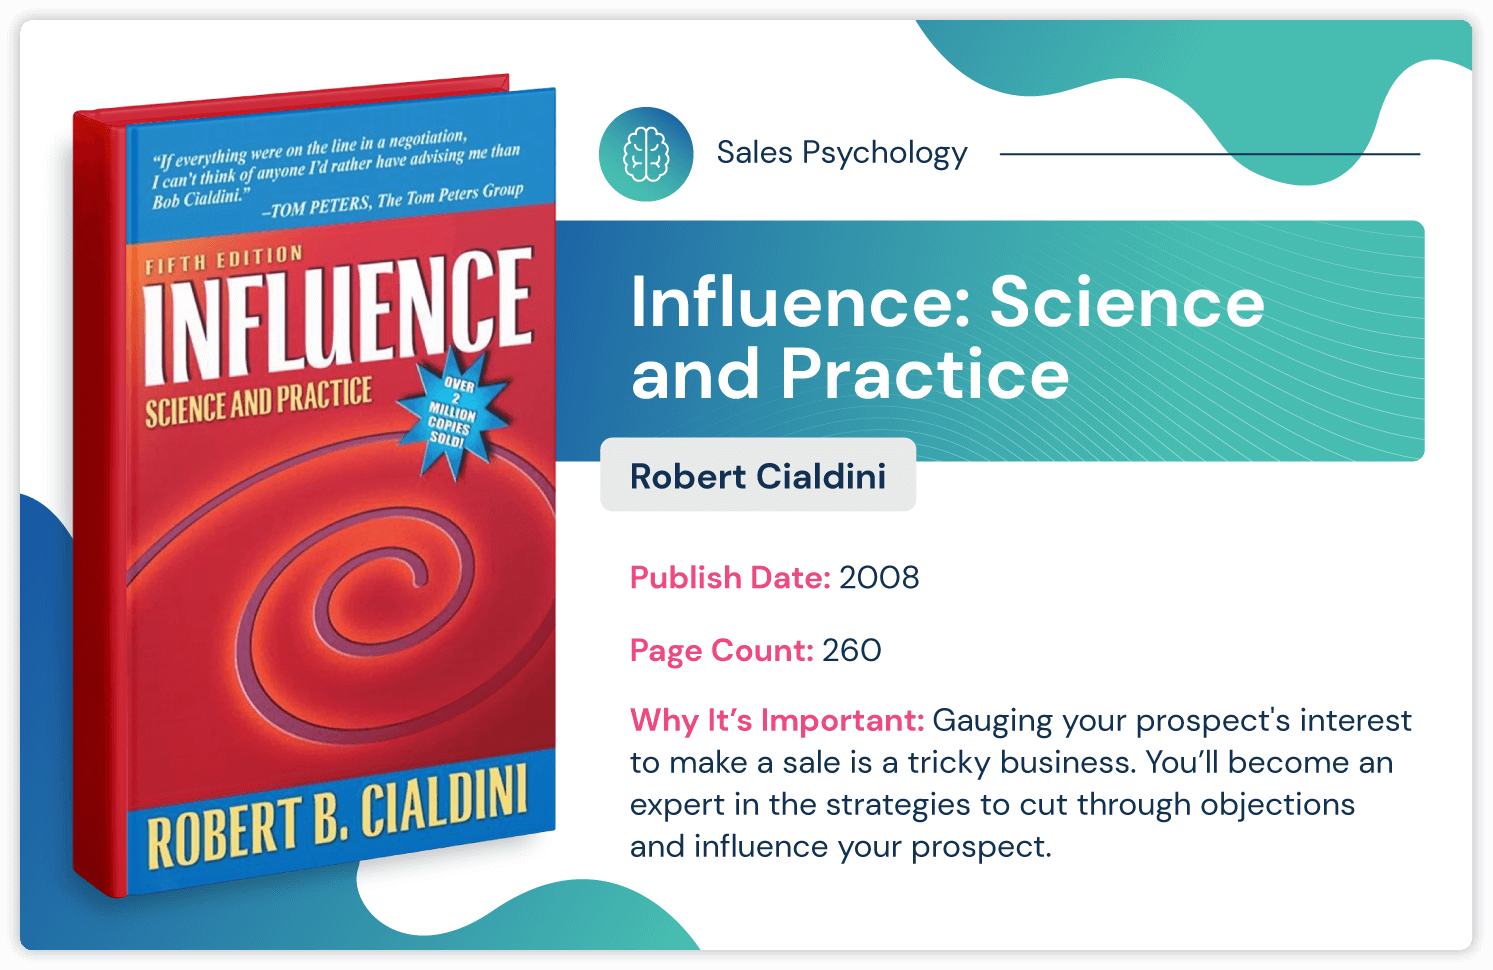 หนังสือจิตวิทยาการขายชื่อ "อิทธิพล: วิทยาศาสตร์และการปฏิบัติ" โดย Robert Cialdini เกี่ยวกับวิธีสร้างอิทธิพลด้วยกลยุทธ์การขาย ตีพิมพ์ในปี 2551 และยาว 260 หน้า